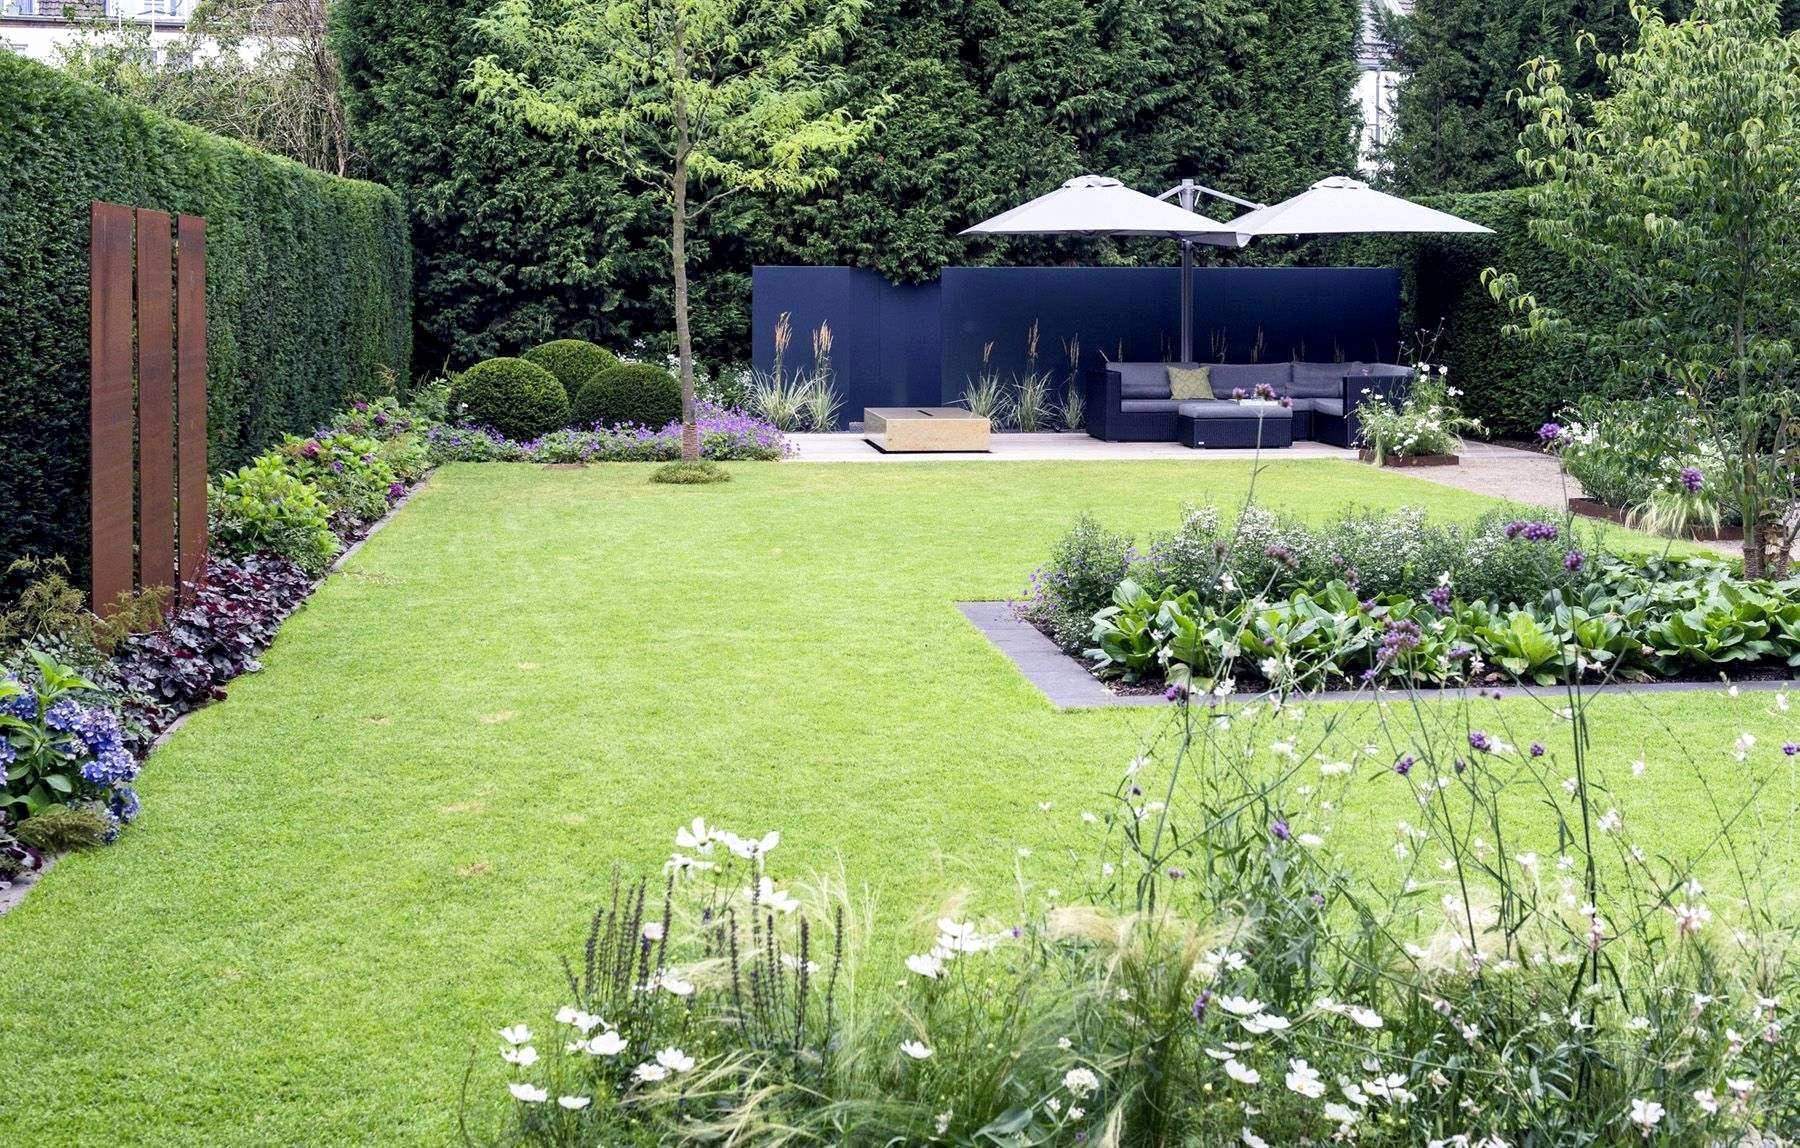 Schöne Vorgärten Bilder Best Of 25 Reizend Gartengestaltung Für Kleine